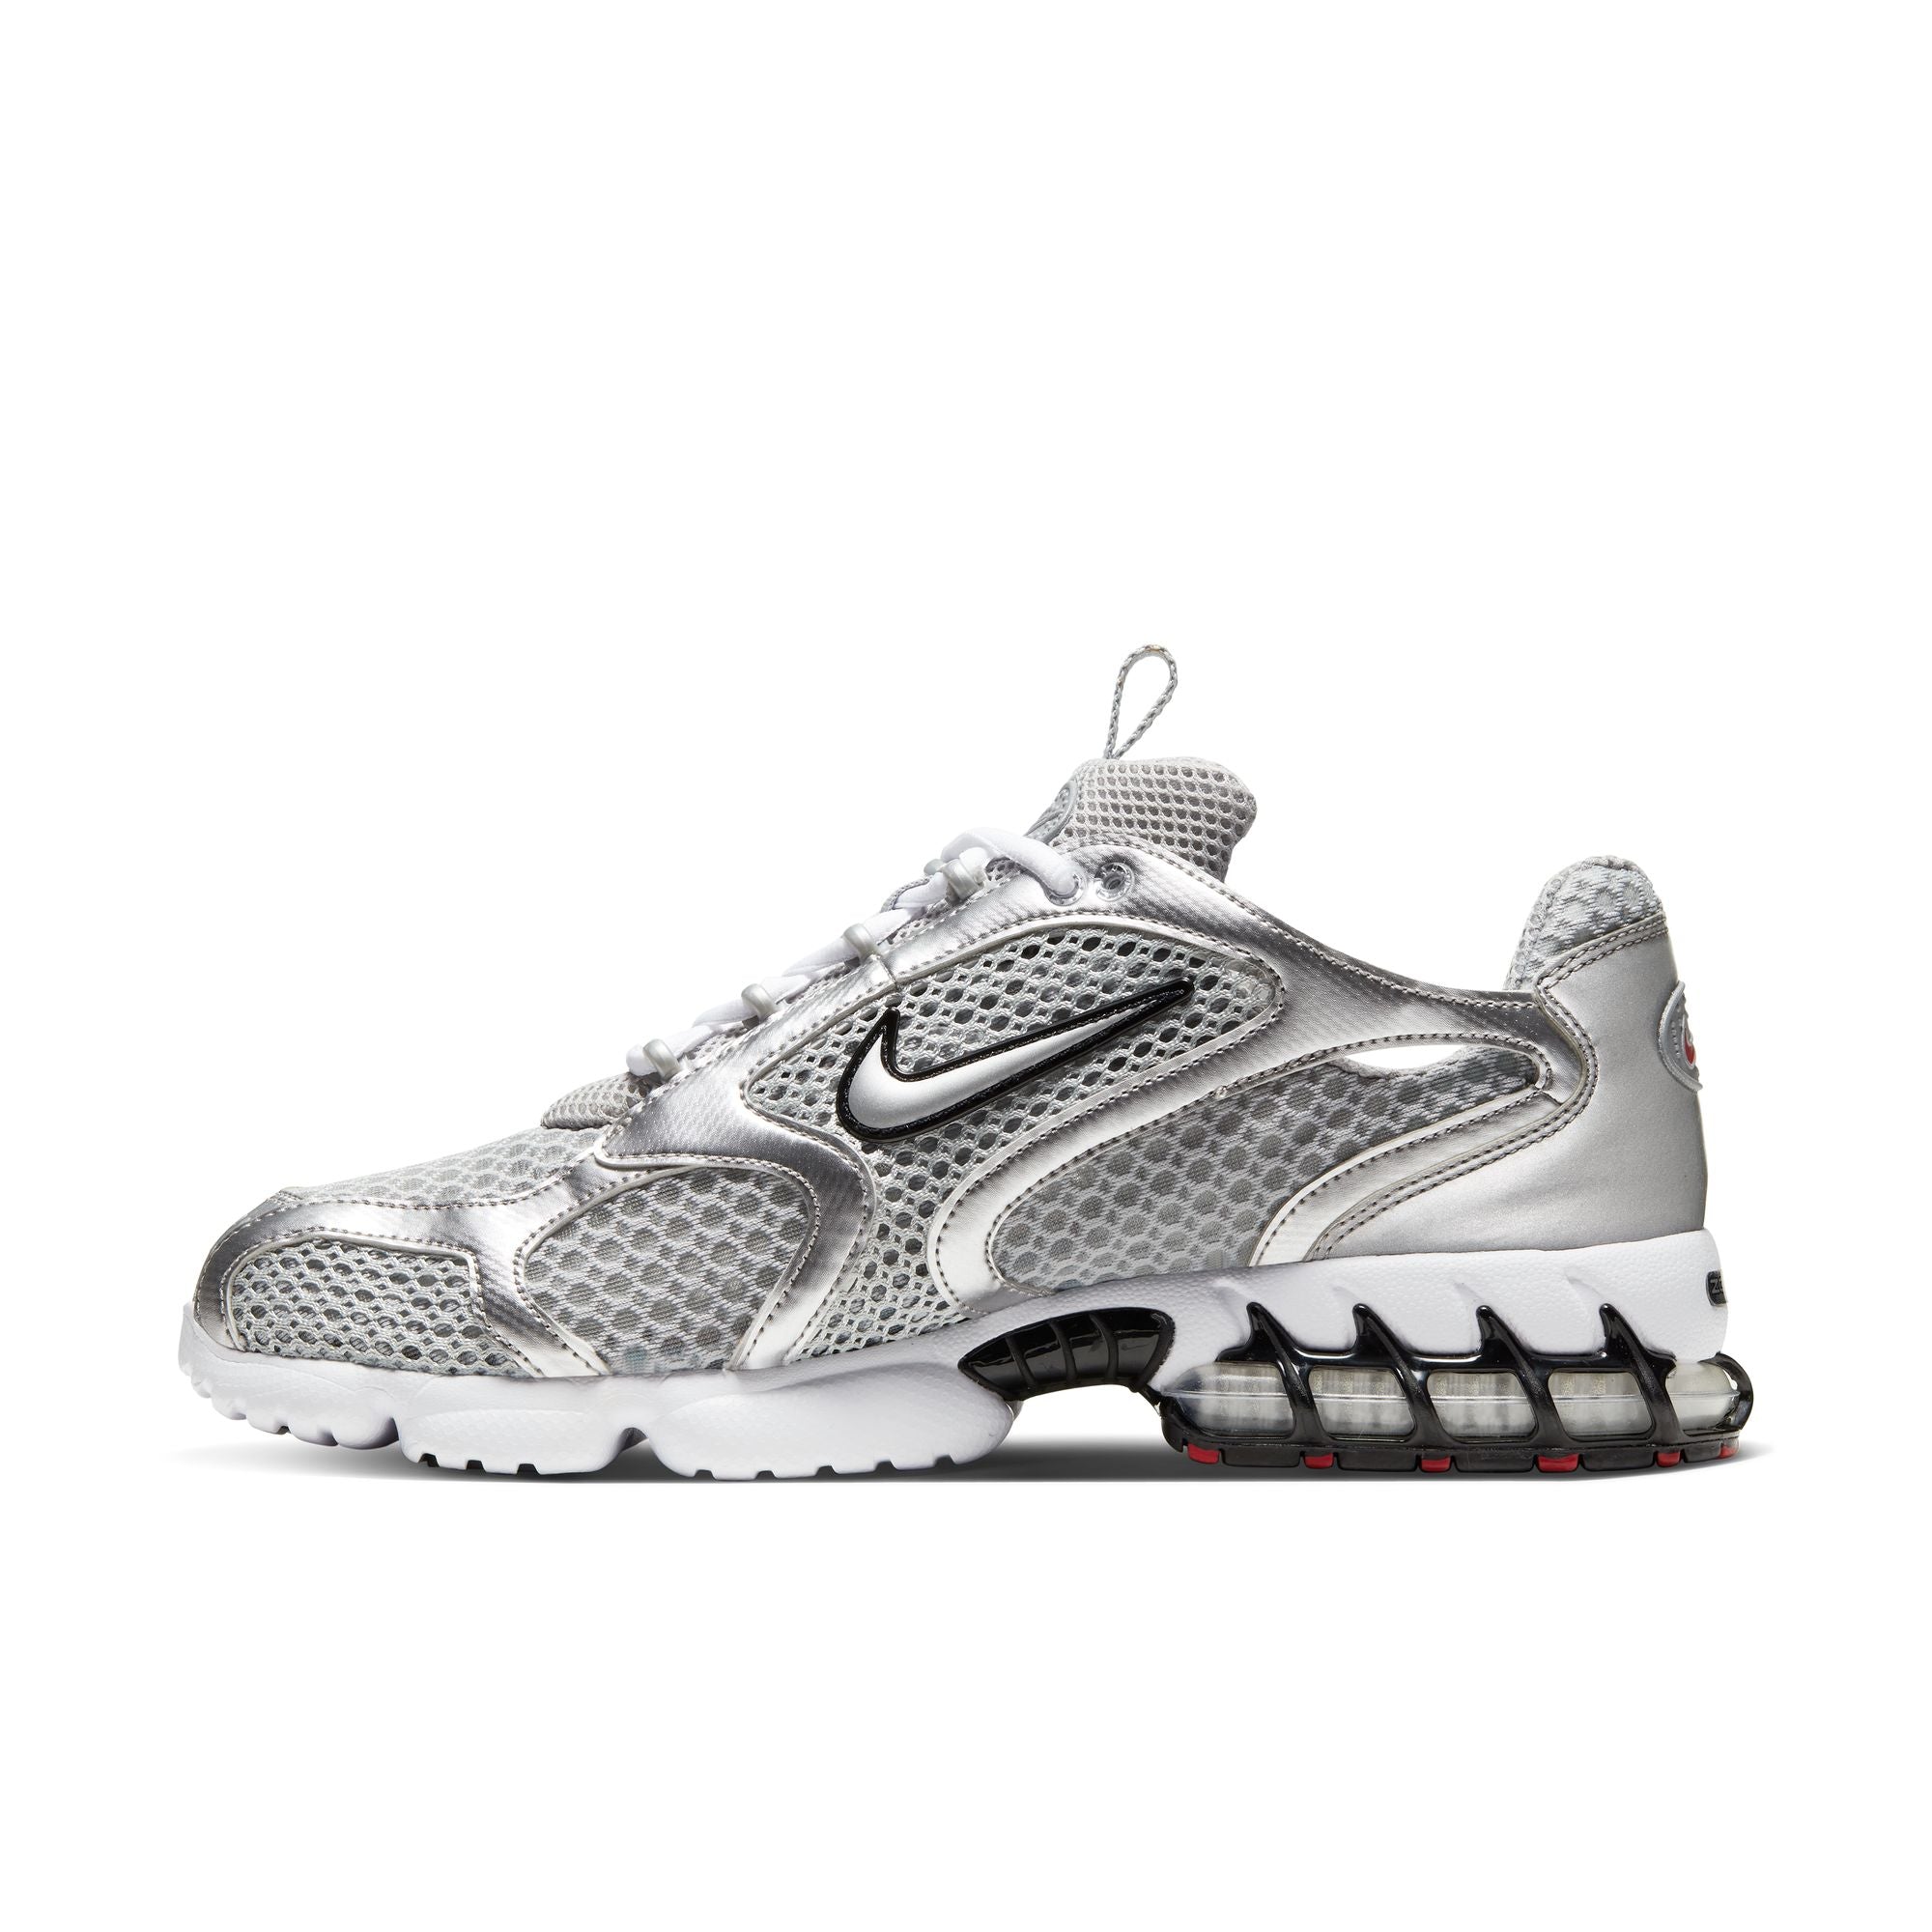 Nike Air Zoom Spiridon Cage 2 'Metallic Silver'